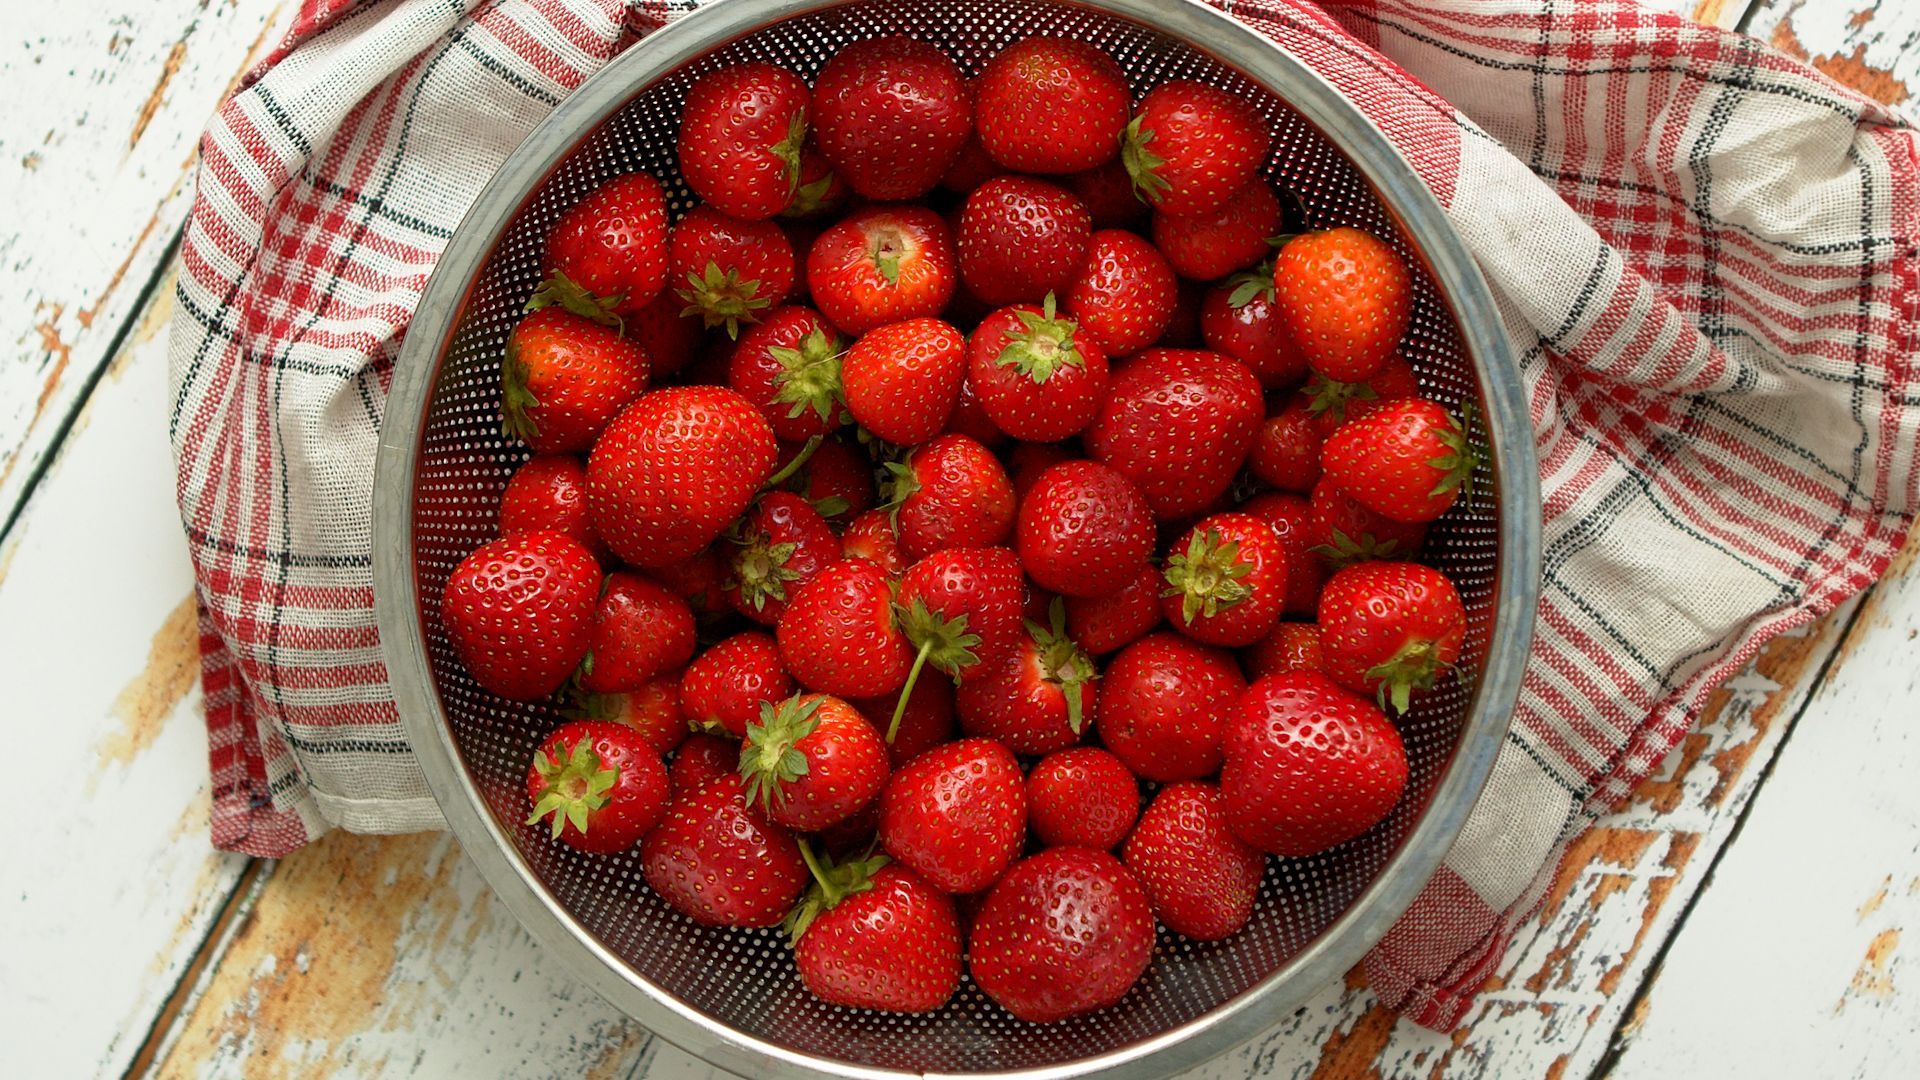 Vitamine, Ballaststoffe, wenig Kalorien: Darum sind Erdbeeren so gesund